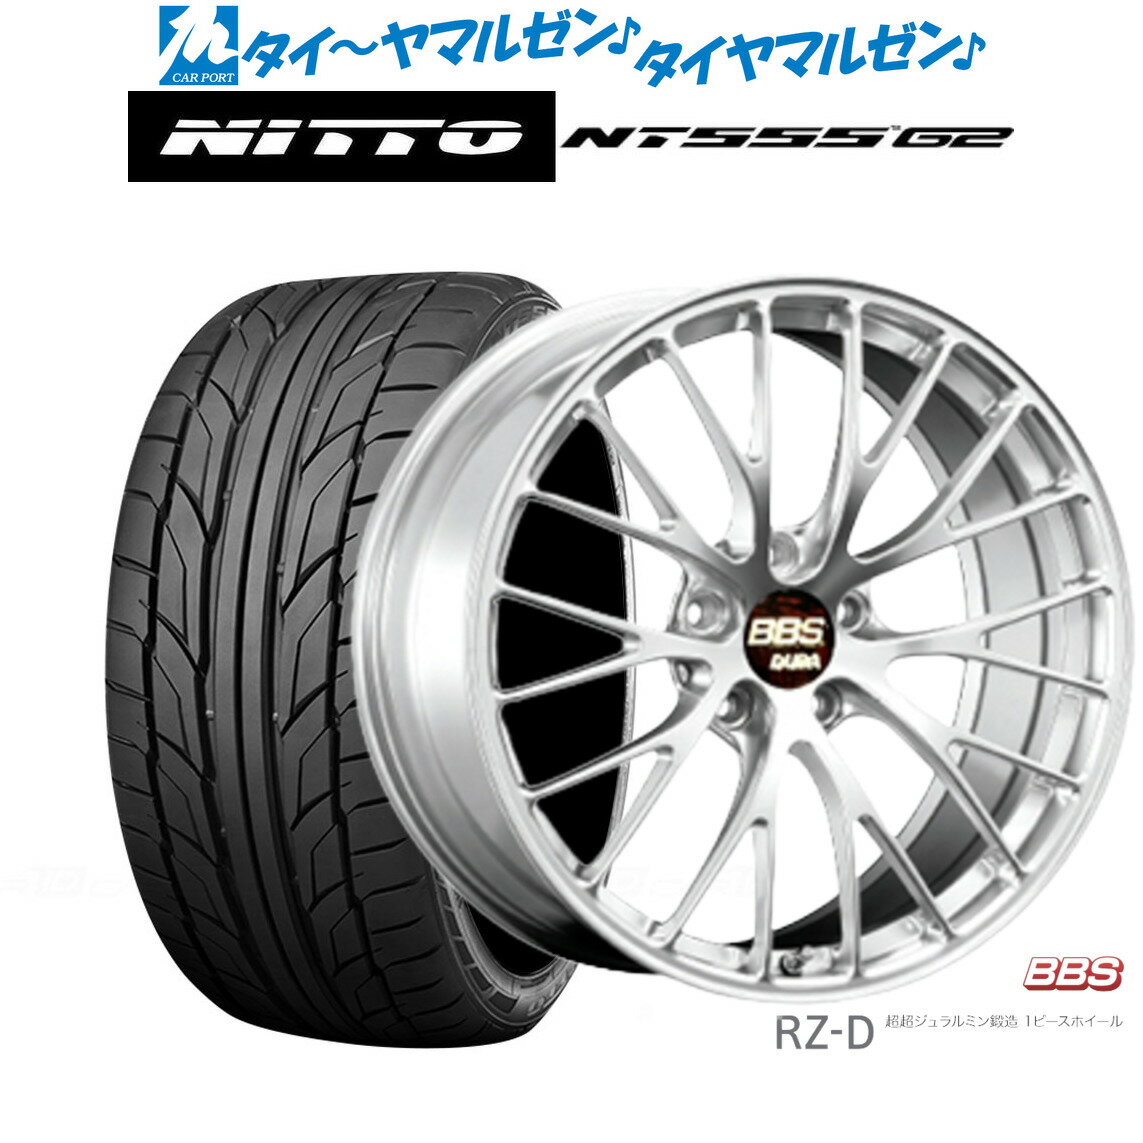 [5/18]ストアポイント3倍!!新品 サマータイヤ ホイール4本セットBBS JAPAN RZ-D20インチ 8.5JNITTO NT555 G2 245/30R20